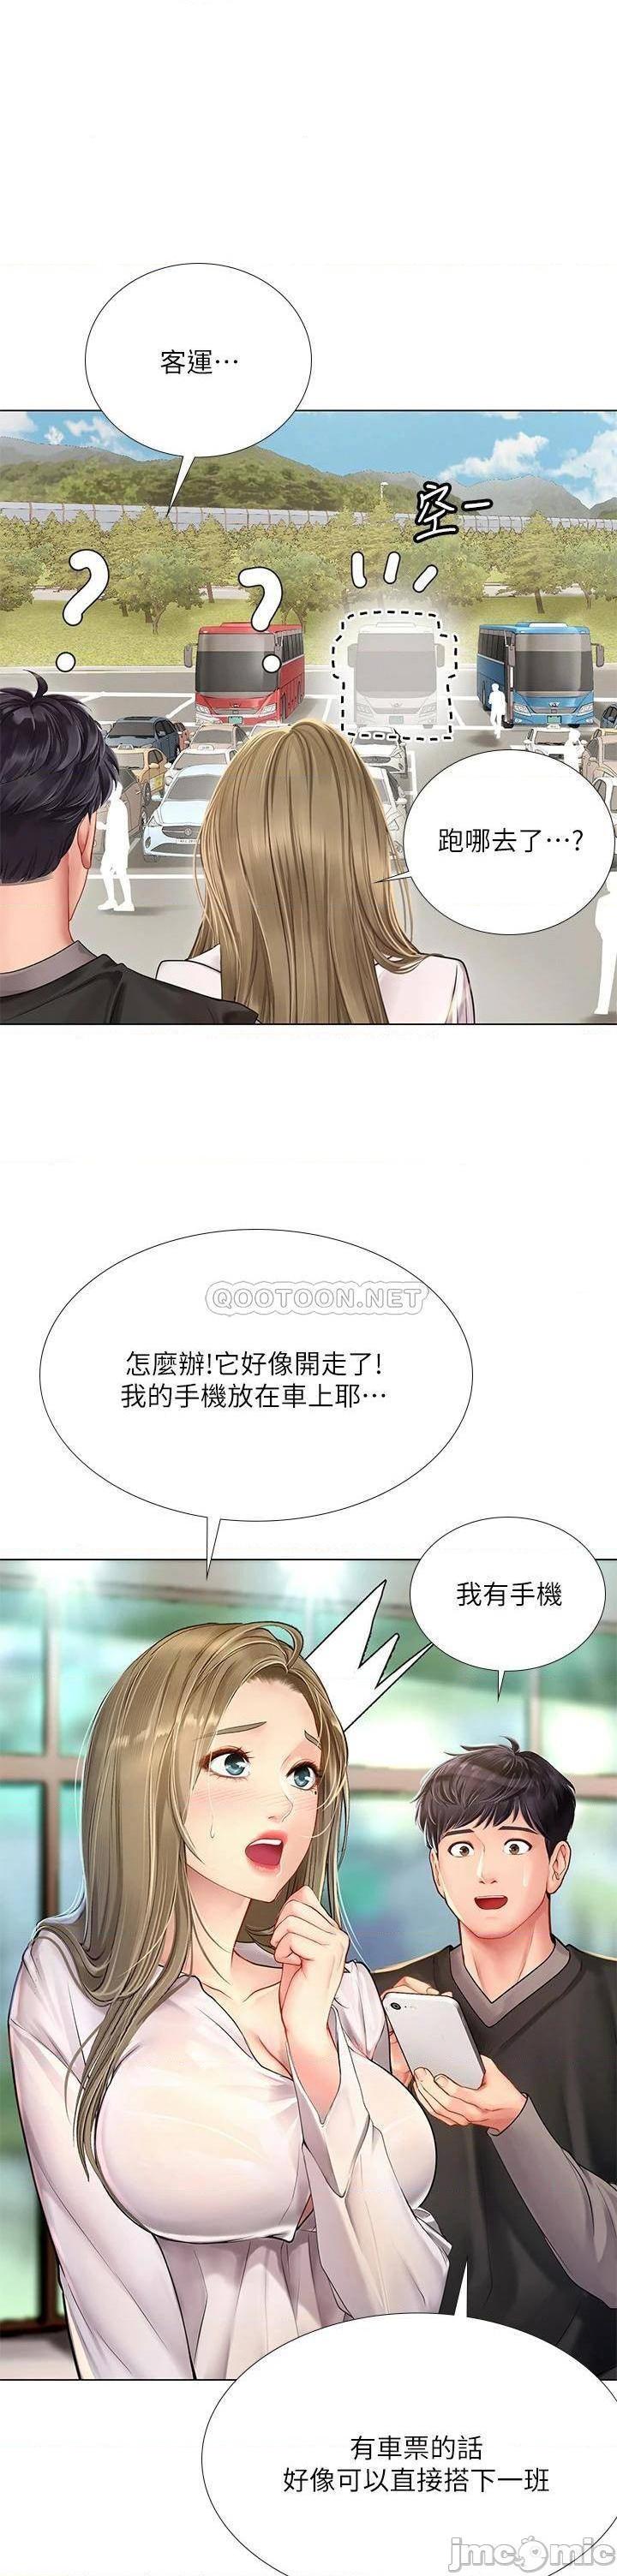 《享乐补习街》漫画 第93话 智妍魅力无边的屁股